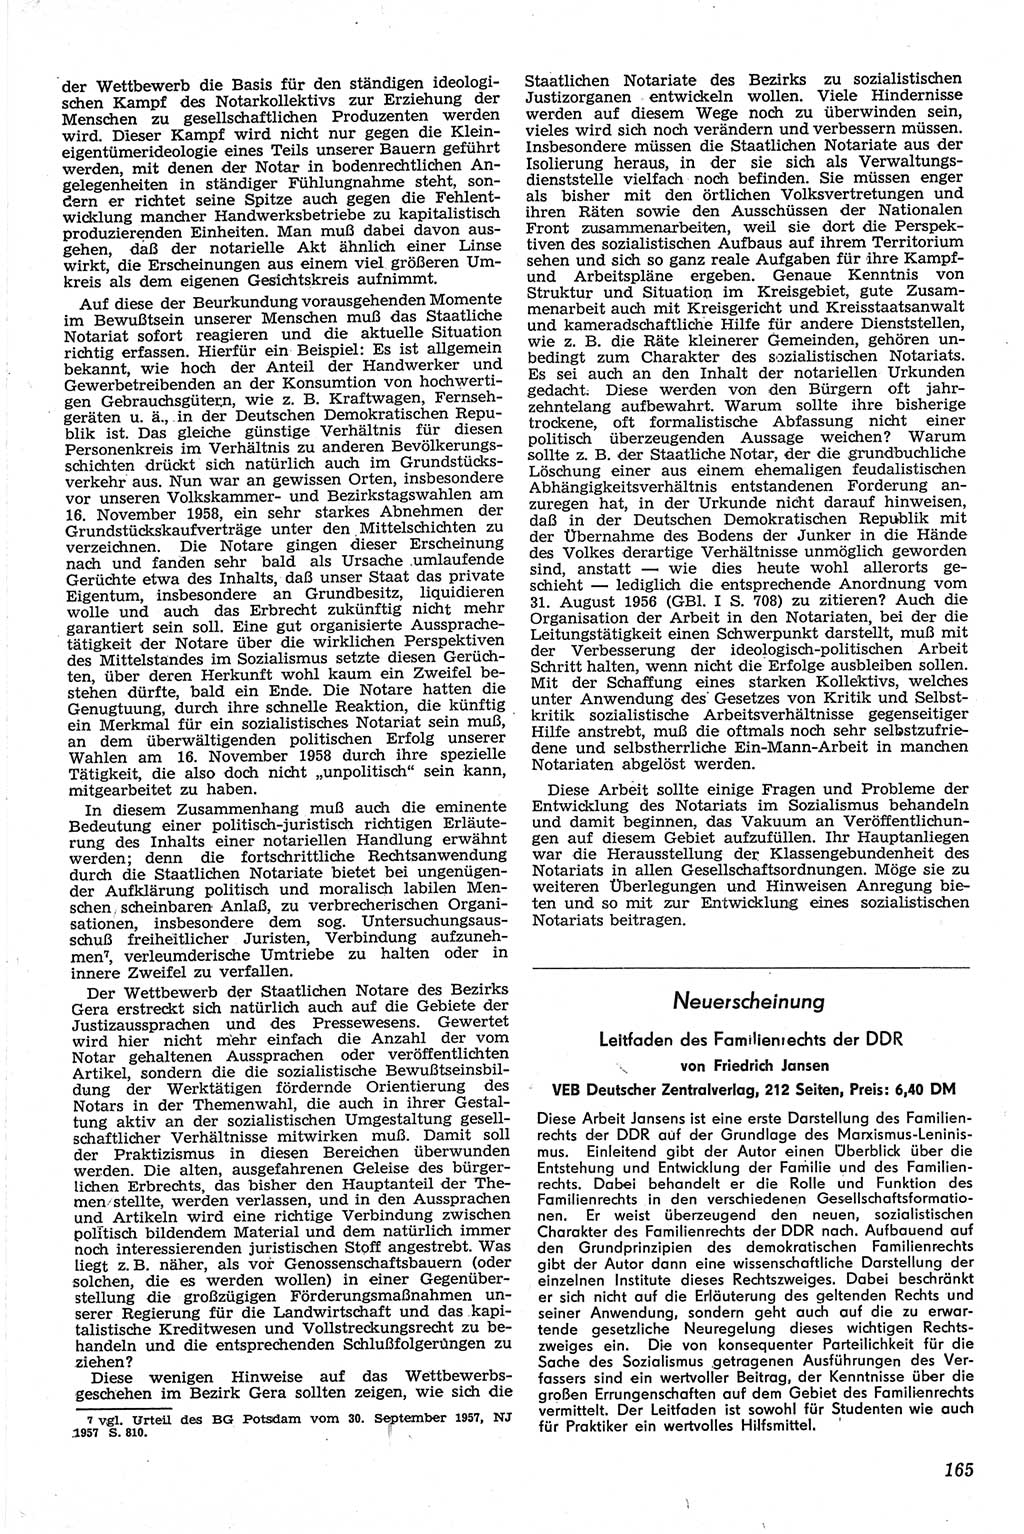 Neue Justiz (NJ), Zeitschrift für Recht und Rechtswissenschaft [Deutsche Demokratische Republik (DDR)], 13. Jahrgang 1959, Seite 165 (NJ DDR 1959, S. 165)